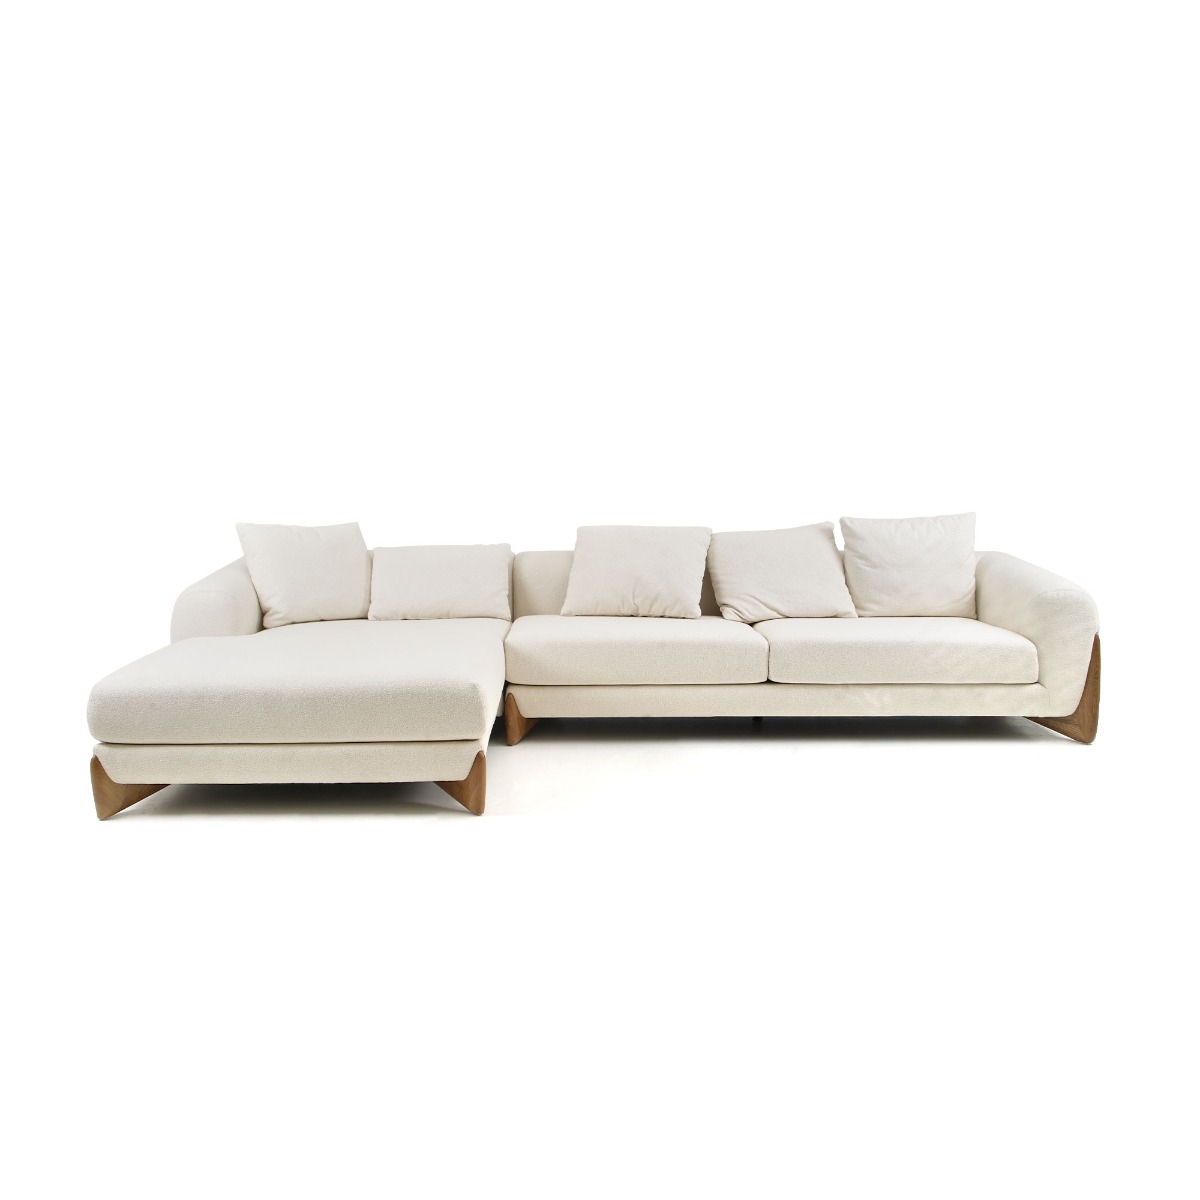 Modrest Fleury – Contemporary Cream Fabric and Walnut LAF Sectional Sofa